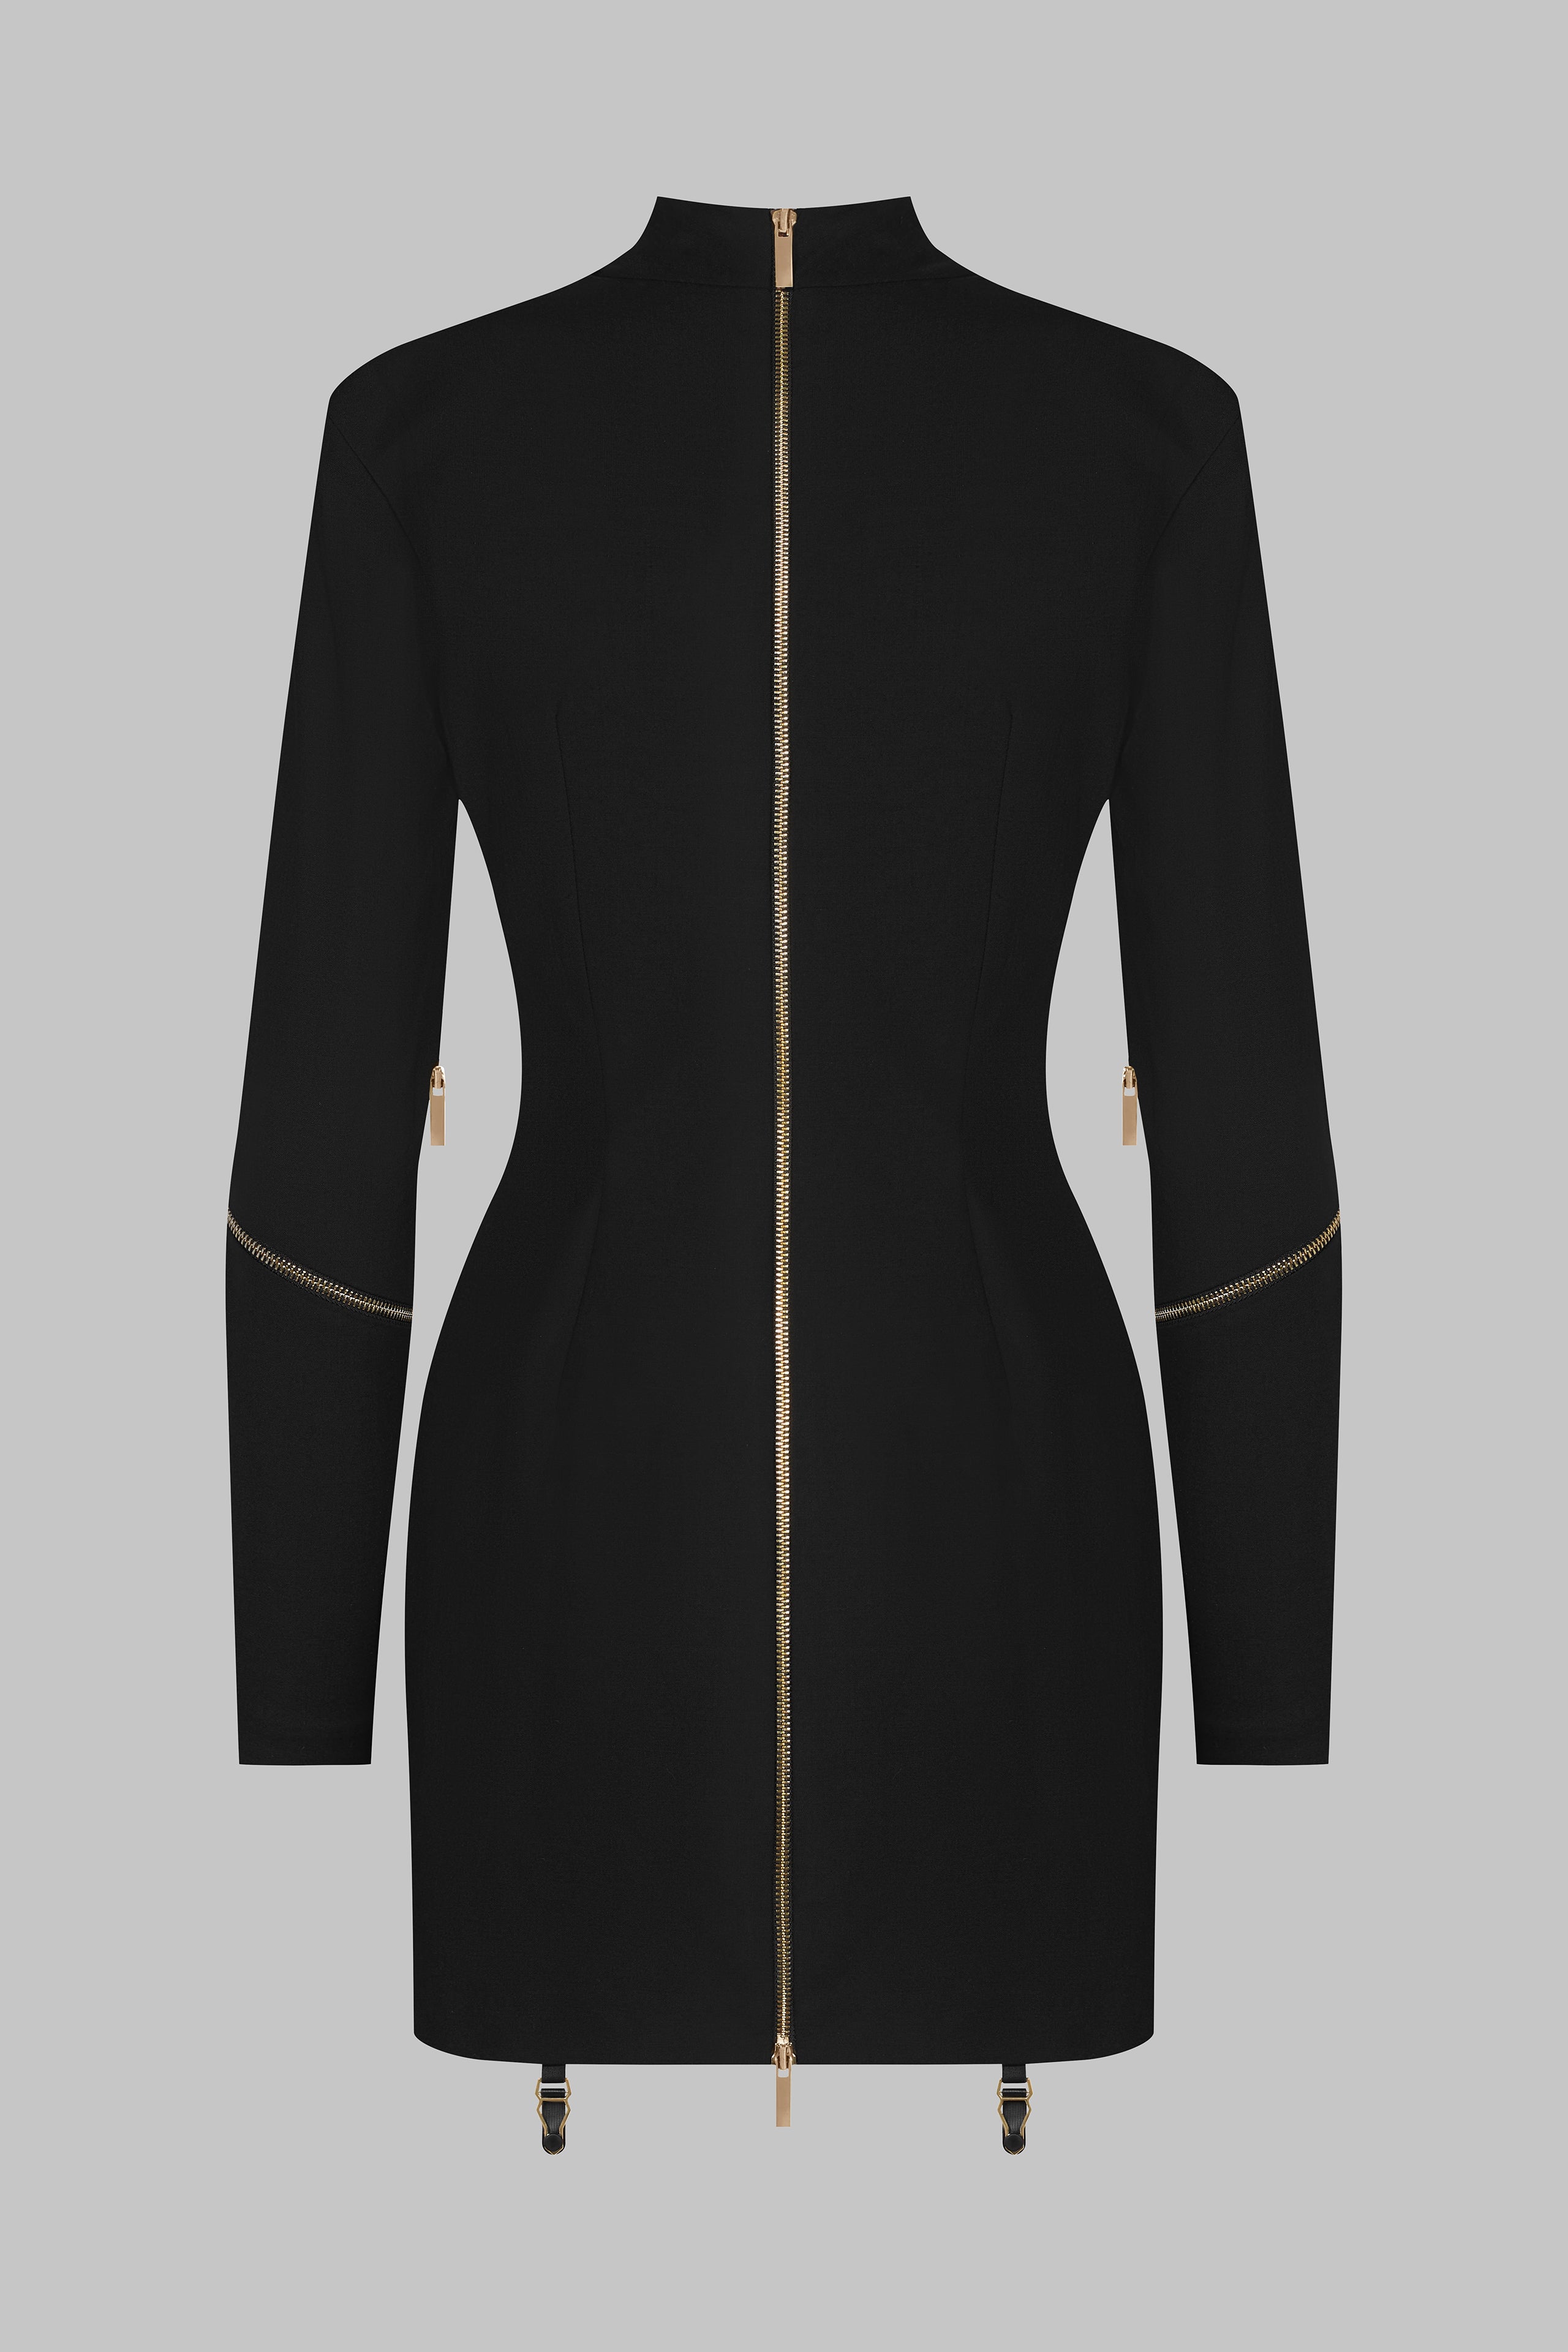 018 - Kurzes Kleid aus Wolle mit Reißverschluss und langen Ärmeln